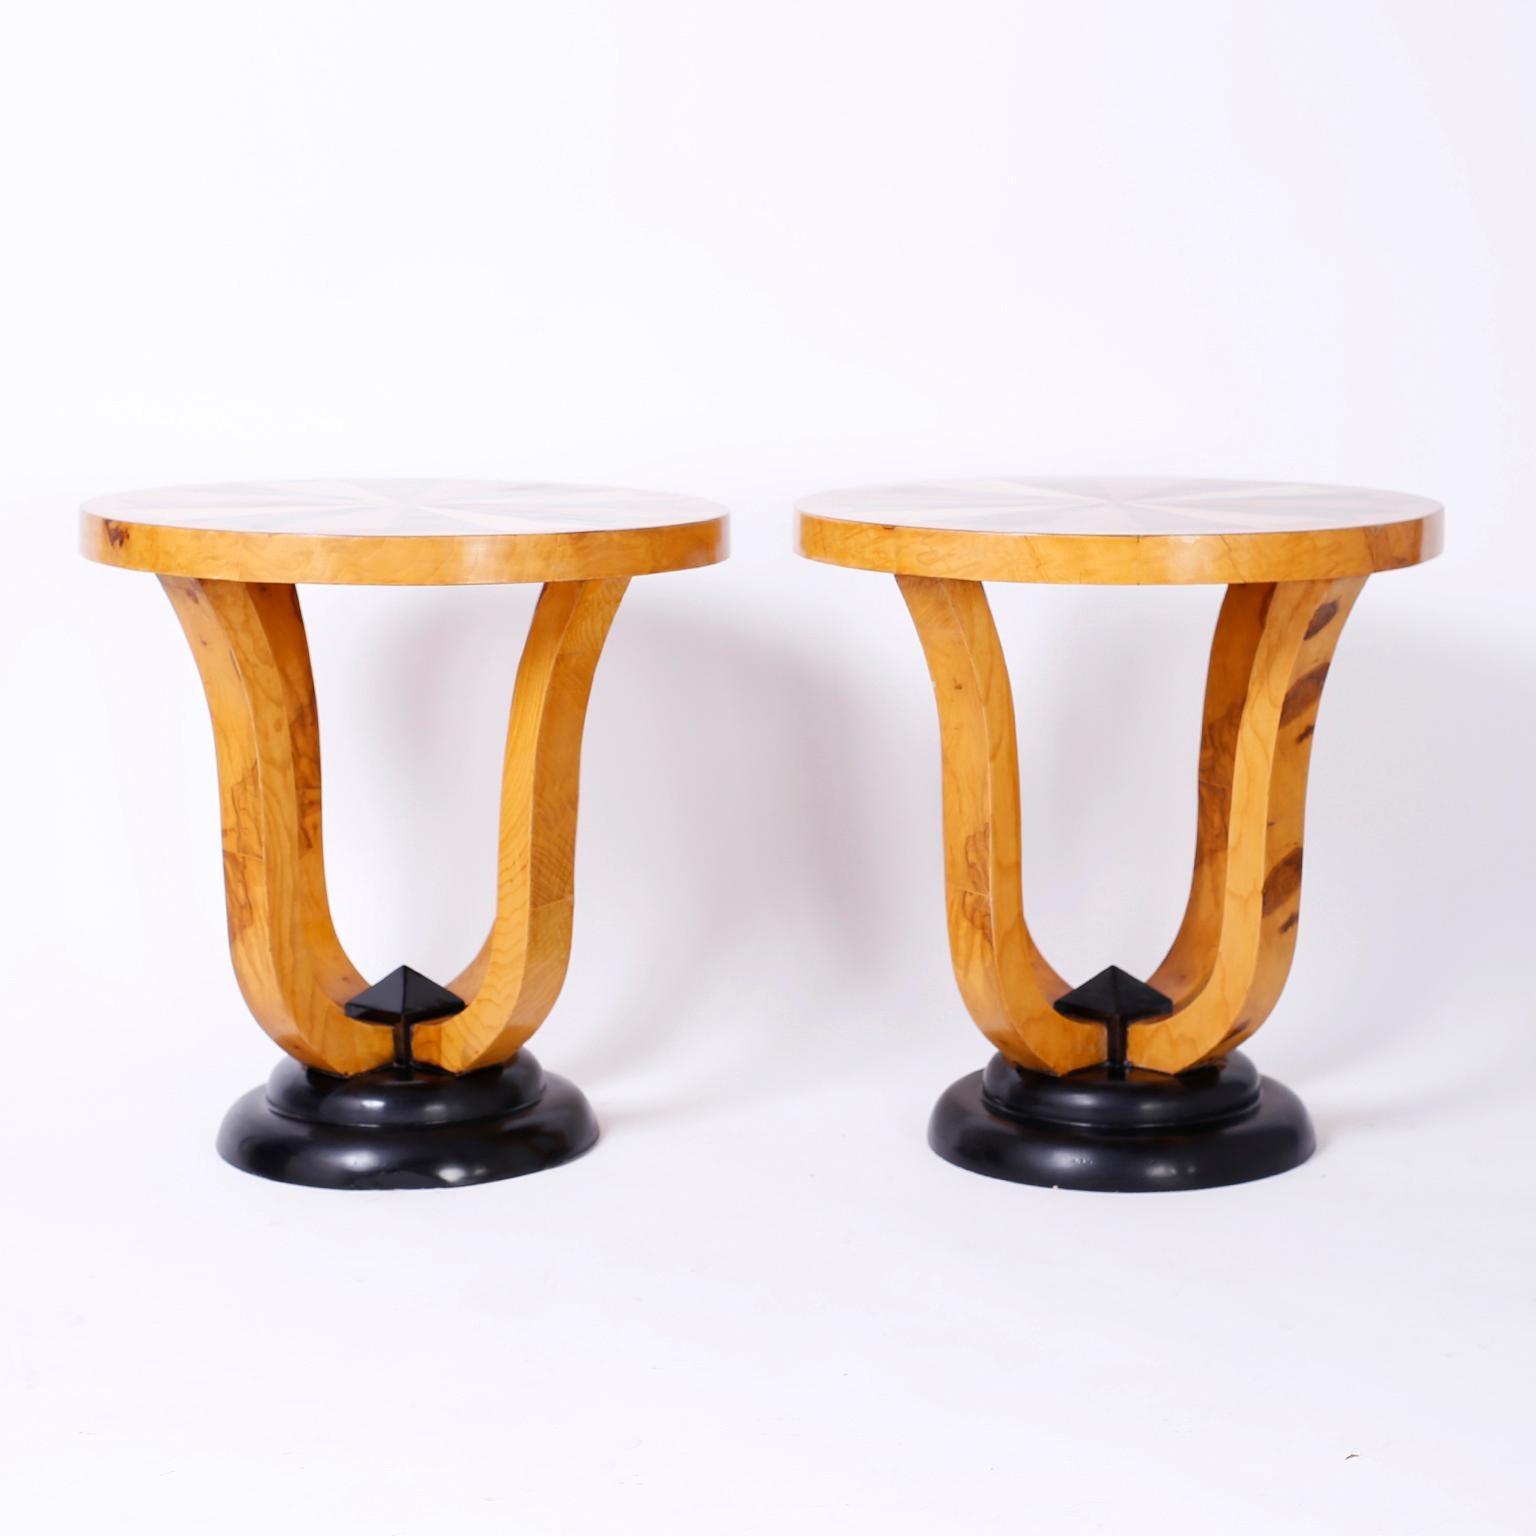 Zwei runde Tische im Art-Déco-Stil mit Intarsien aus Mahagoni-, Birken-, Kiefern- und Zebranoholz in Form eines Rädchens.